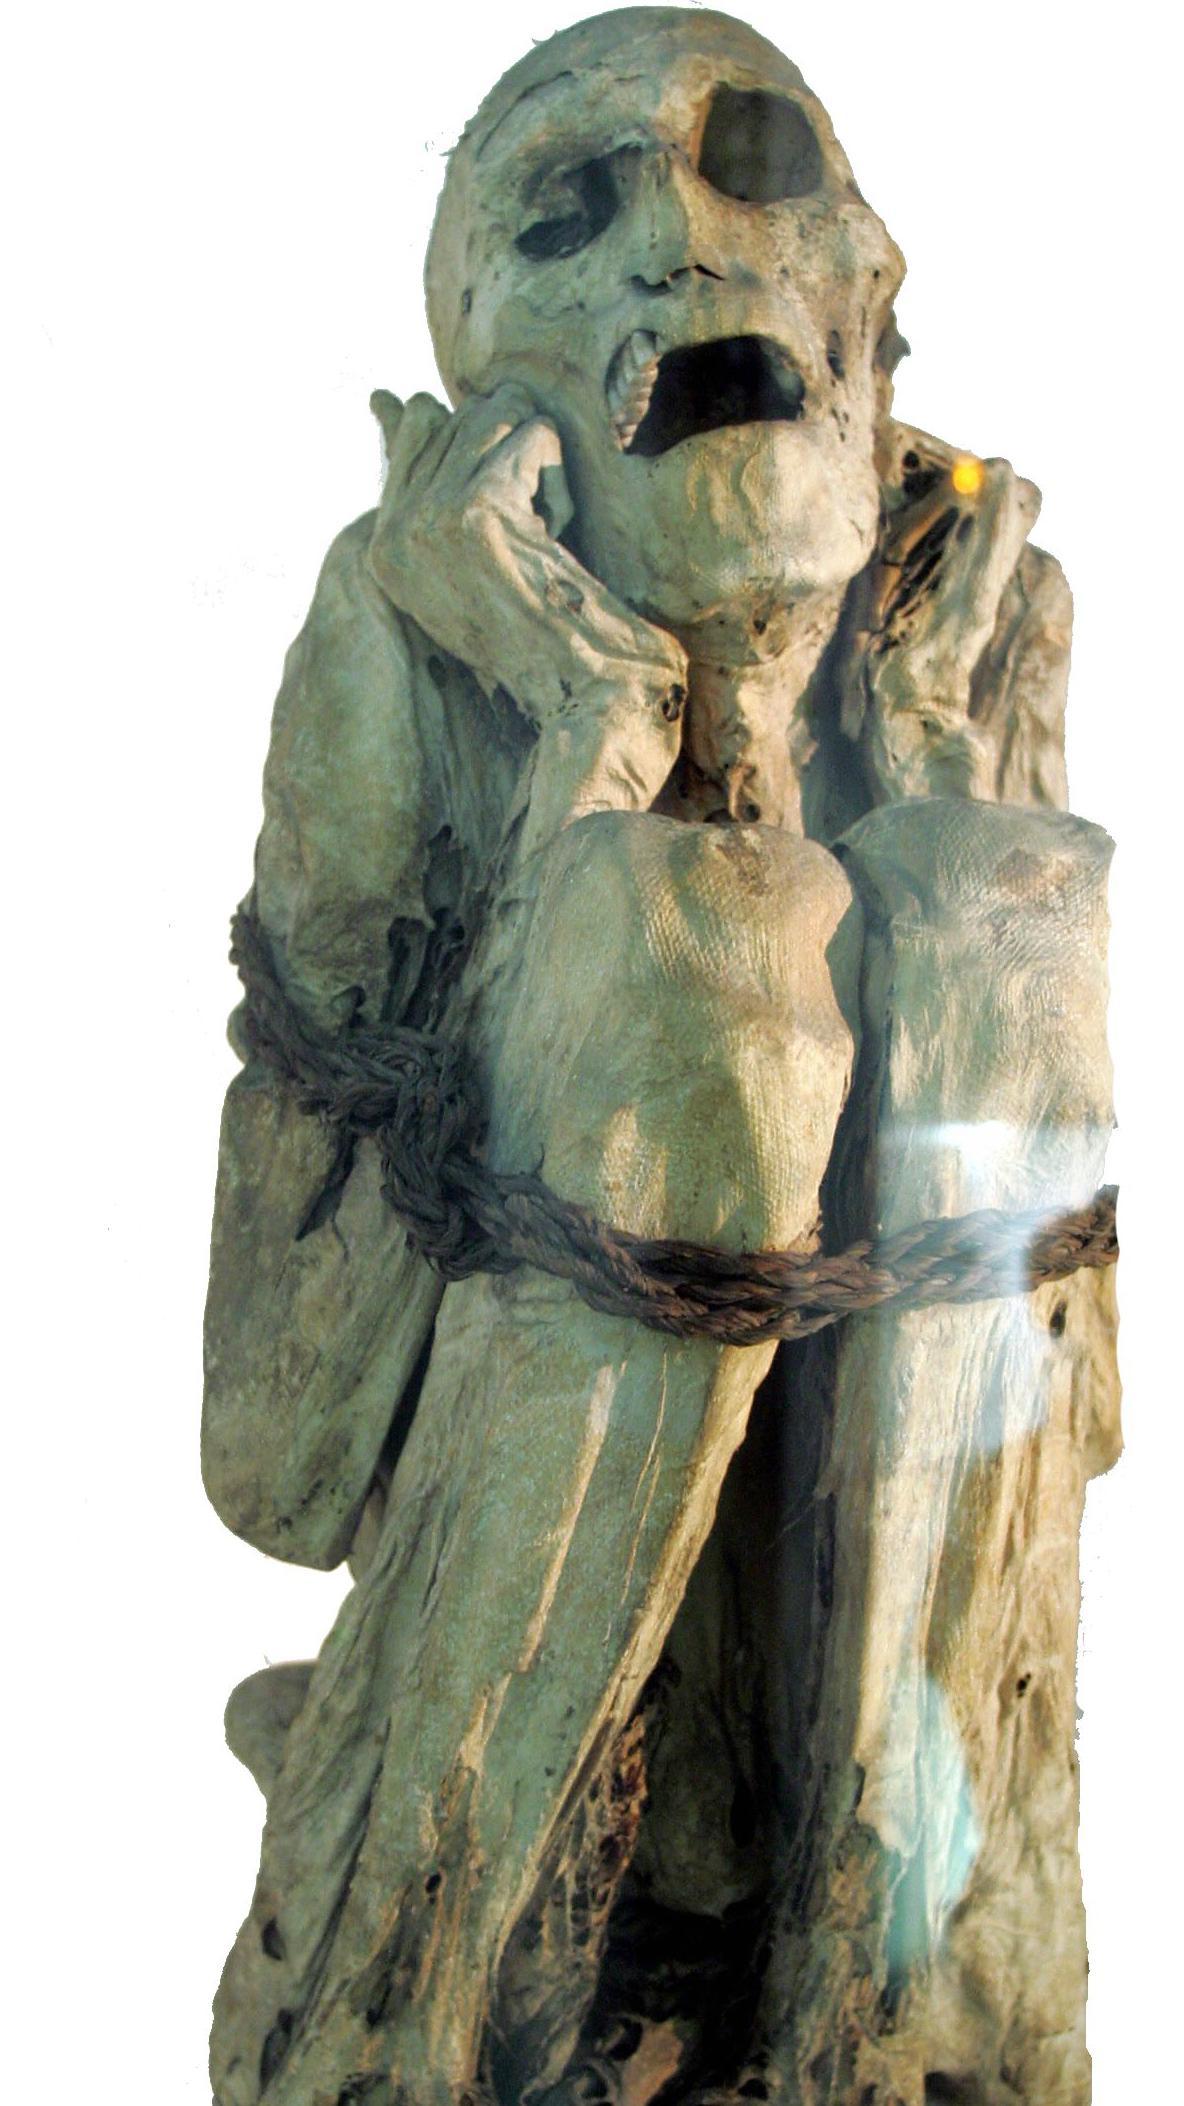 La momia de Chachapoya del Museo del Hombre de París.